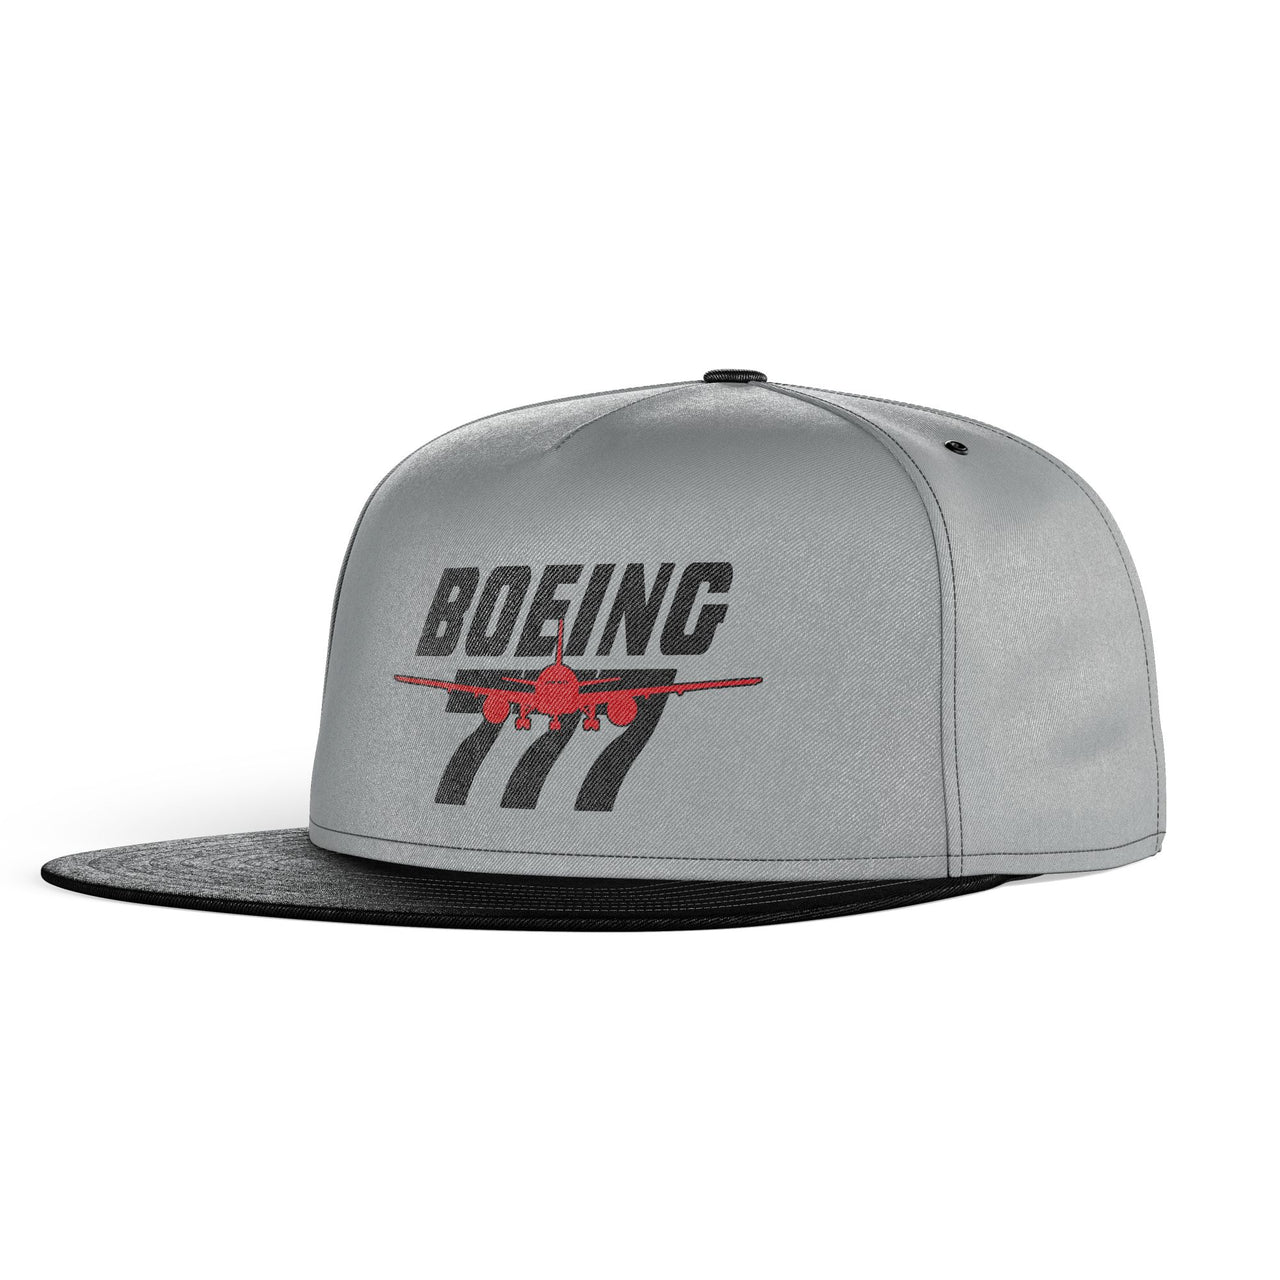 Amazing Boeing 777 Designed Snapback Caps & Hats